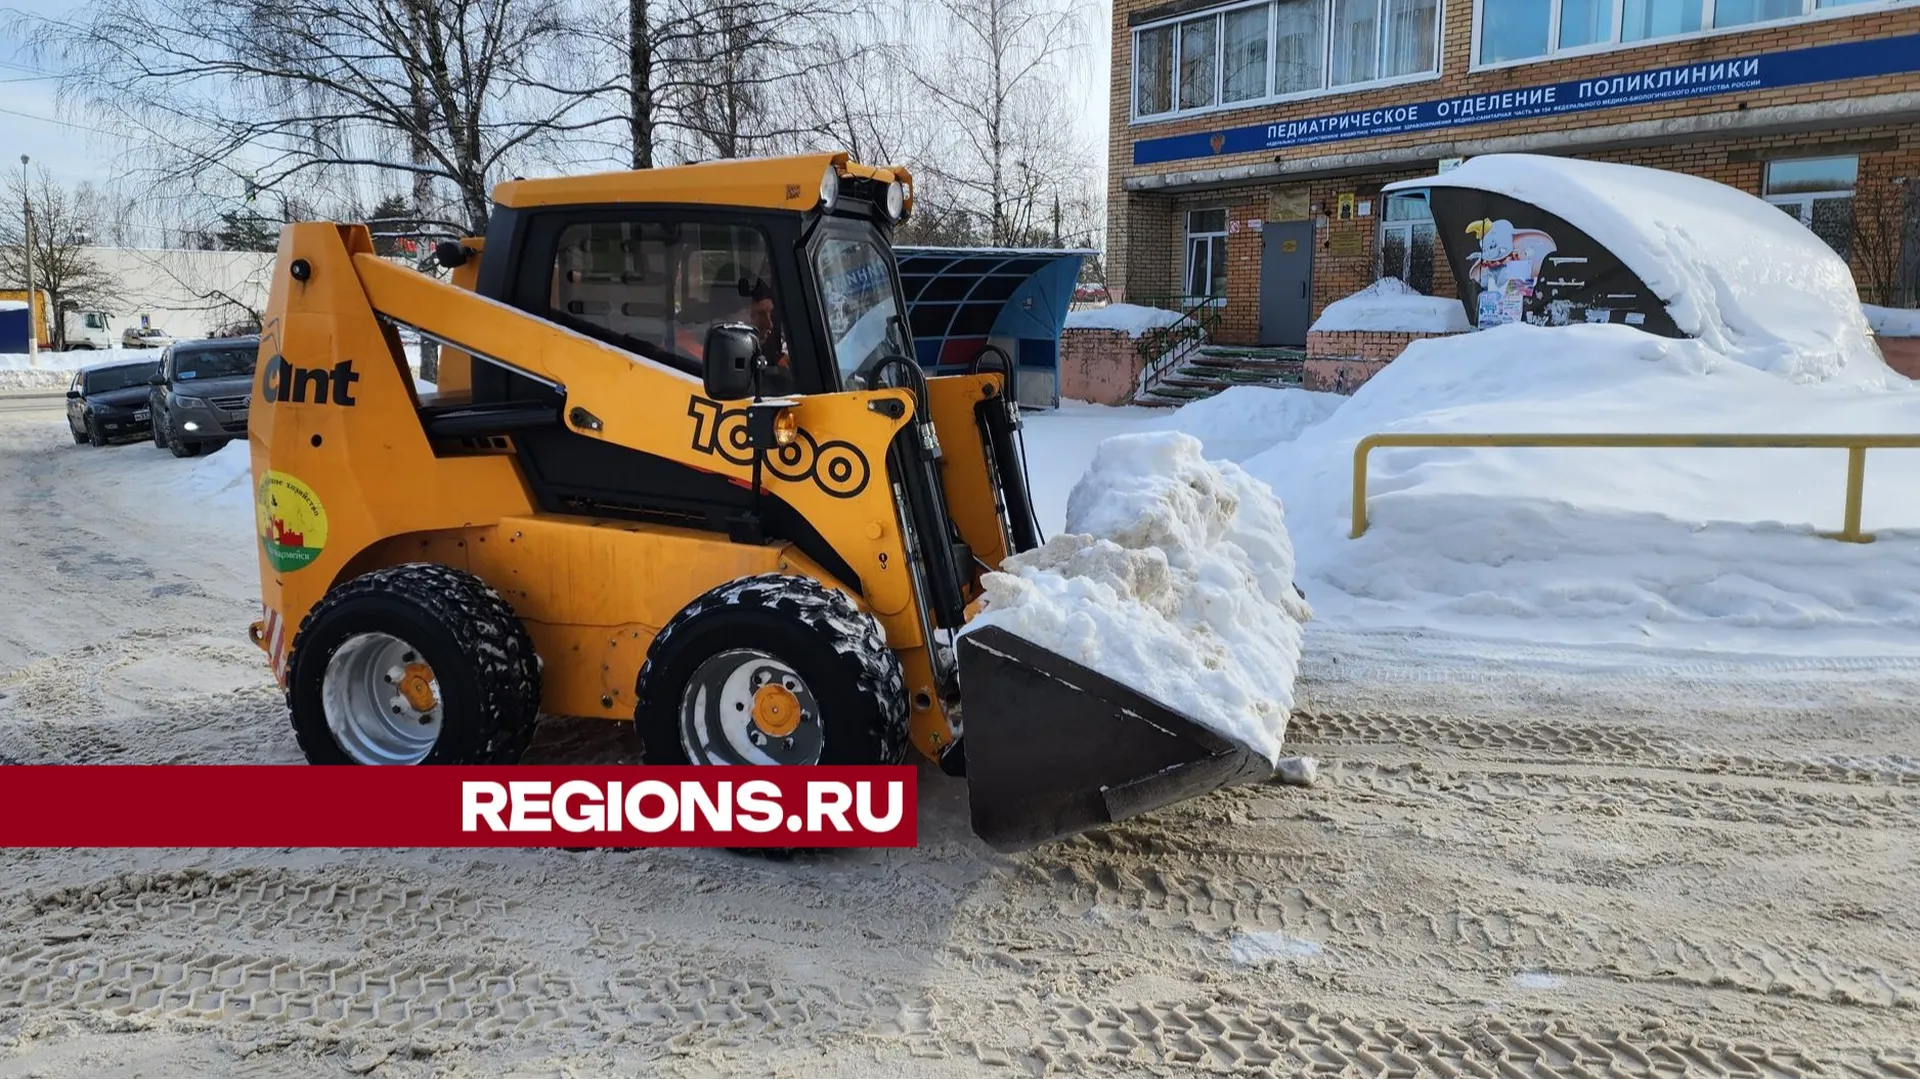 В Городском округе Пушкинский от снега и наледи расчистили парковки для инвалидов